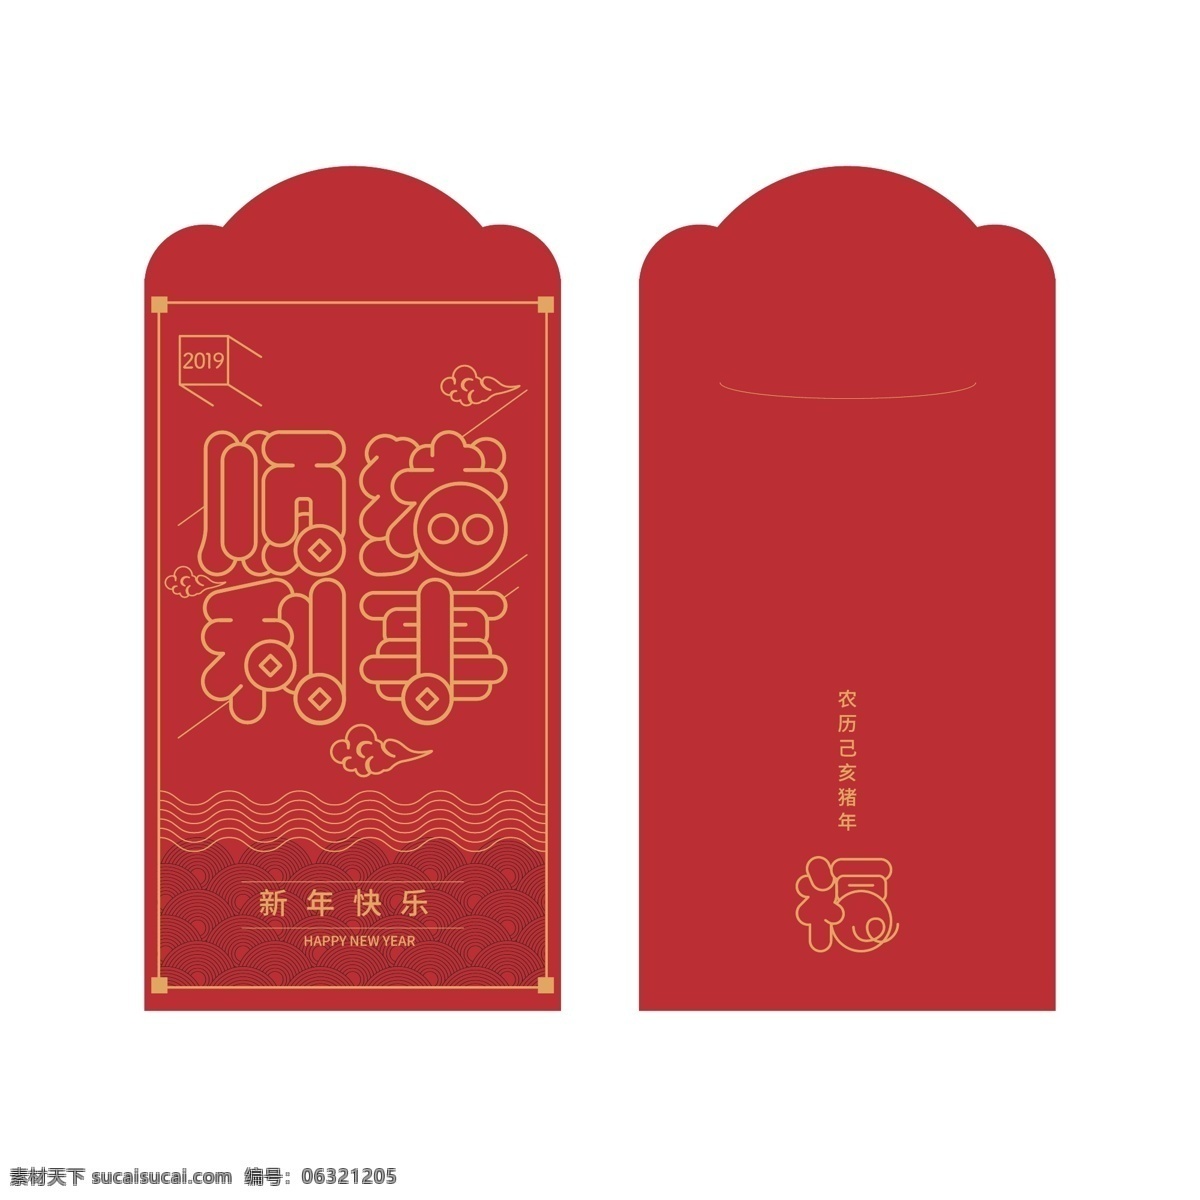 红包设计 红包 人情 份子 节日 春节 过年 来往 诸事顺利 包装设计